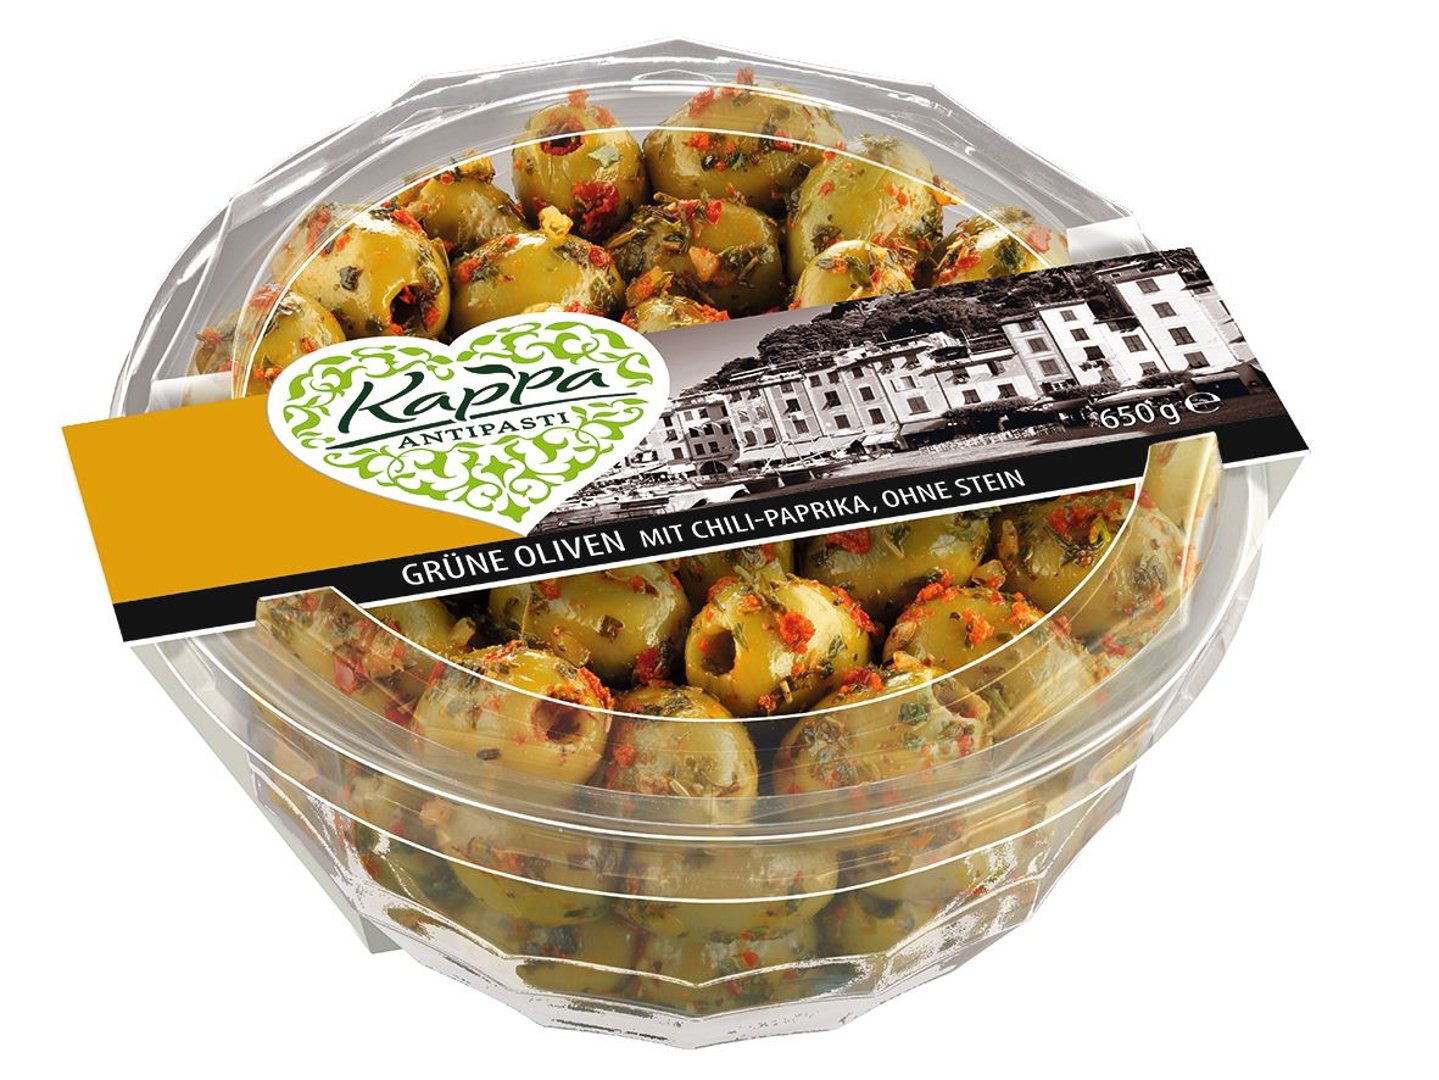 Kappa Oliven Grün ohne Stein, pikant, mit Kräuter & Chili gekühlt - 650 g Schale